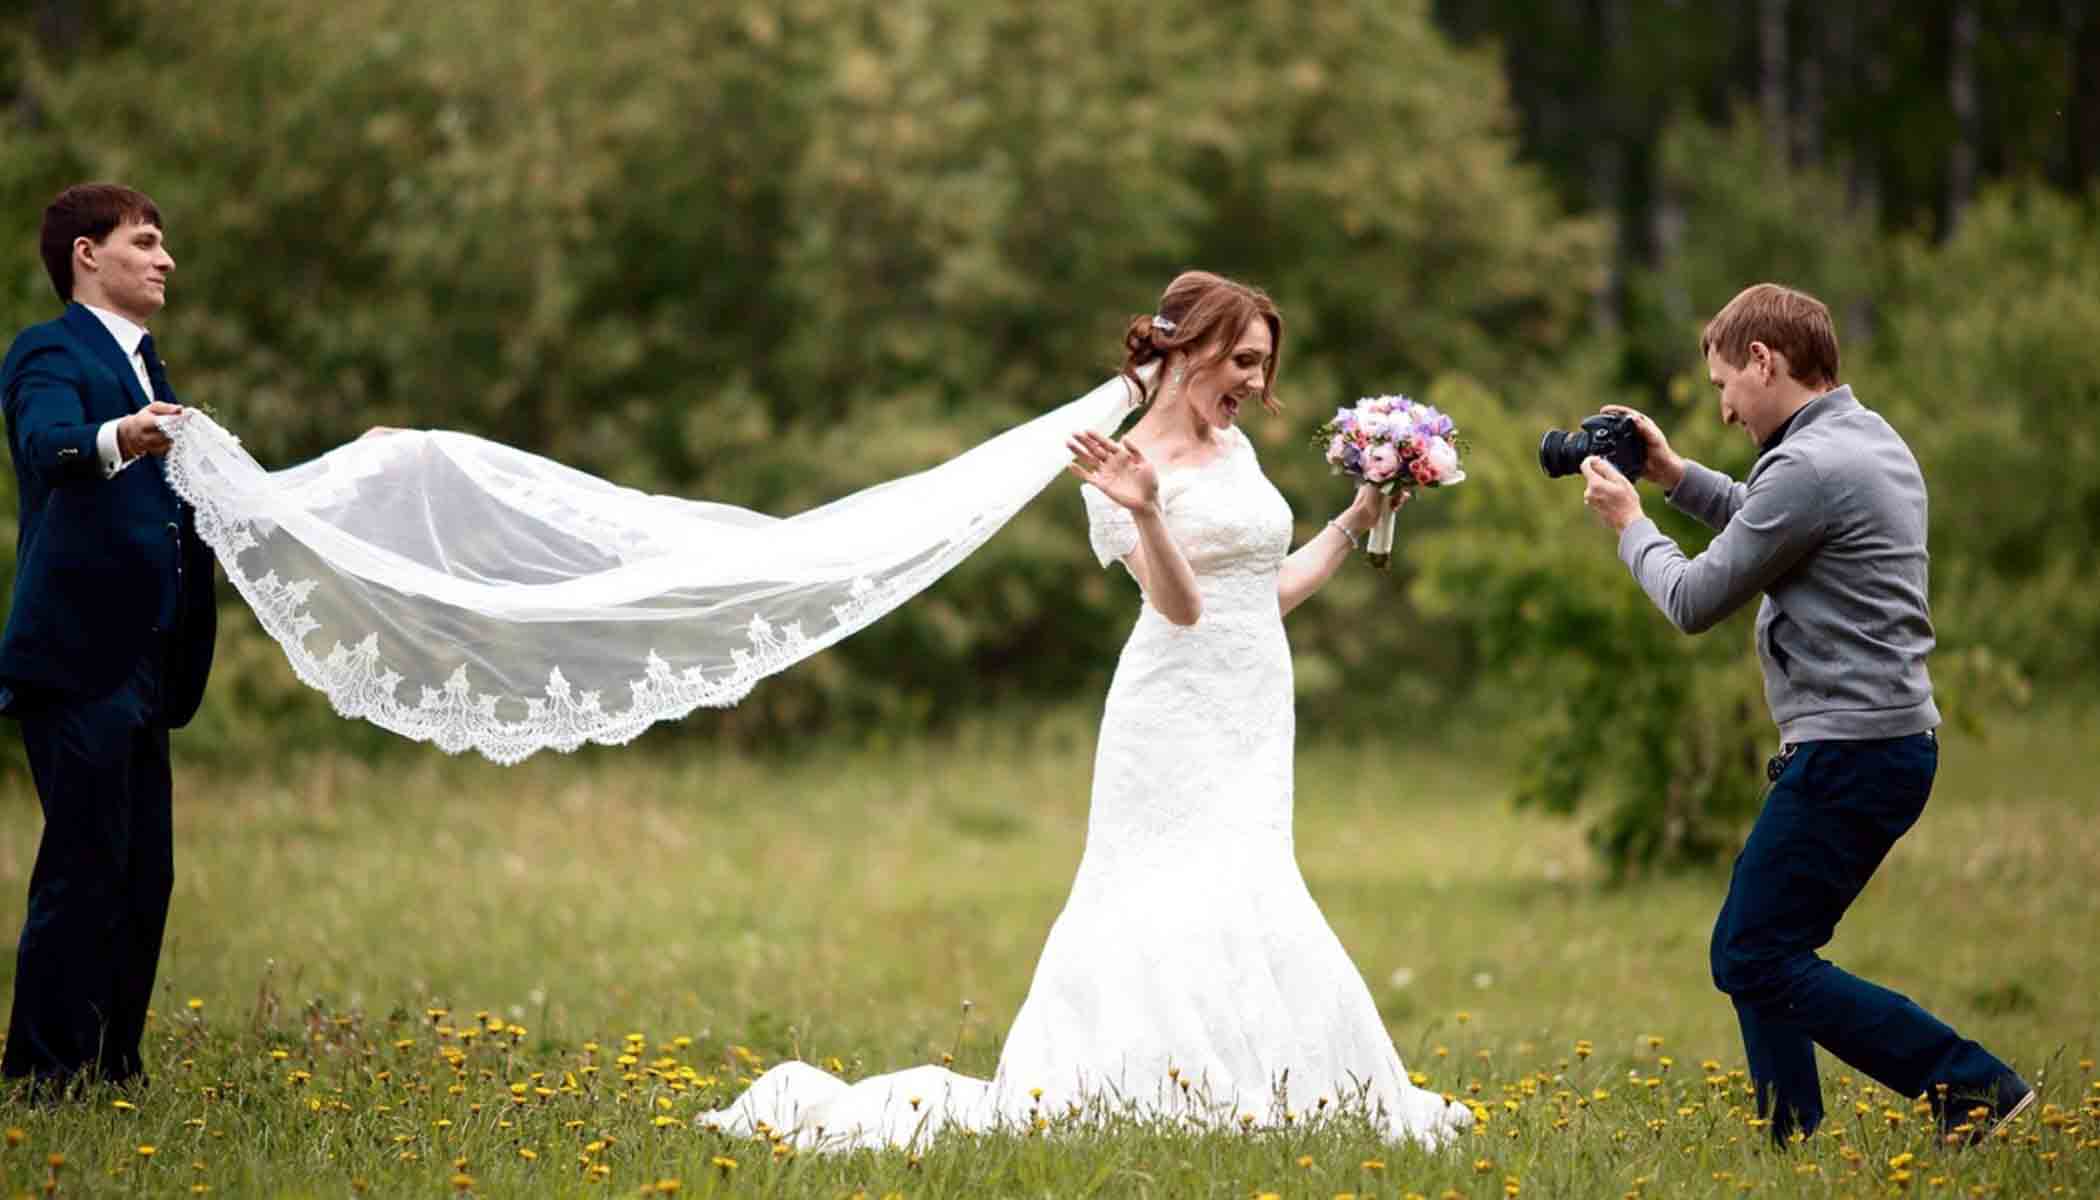 به بودجه ی تعیین شده برای عکاسی عروسی خود احترام بگذارید